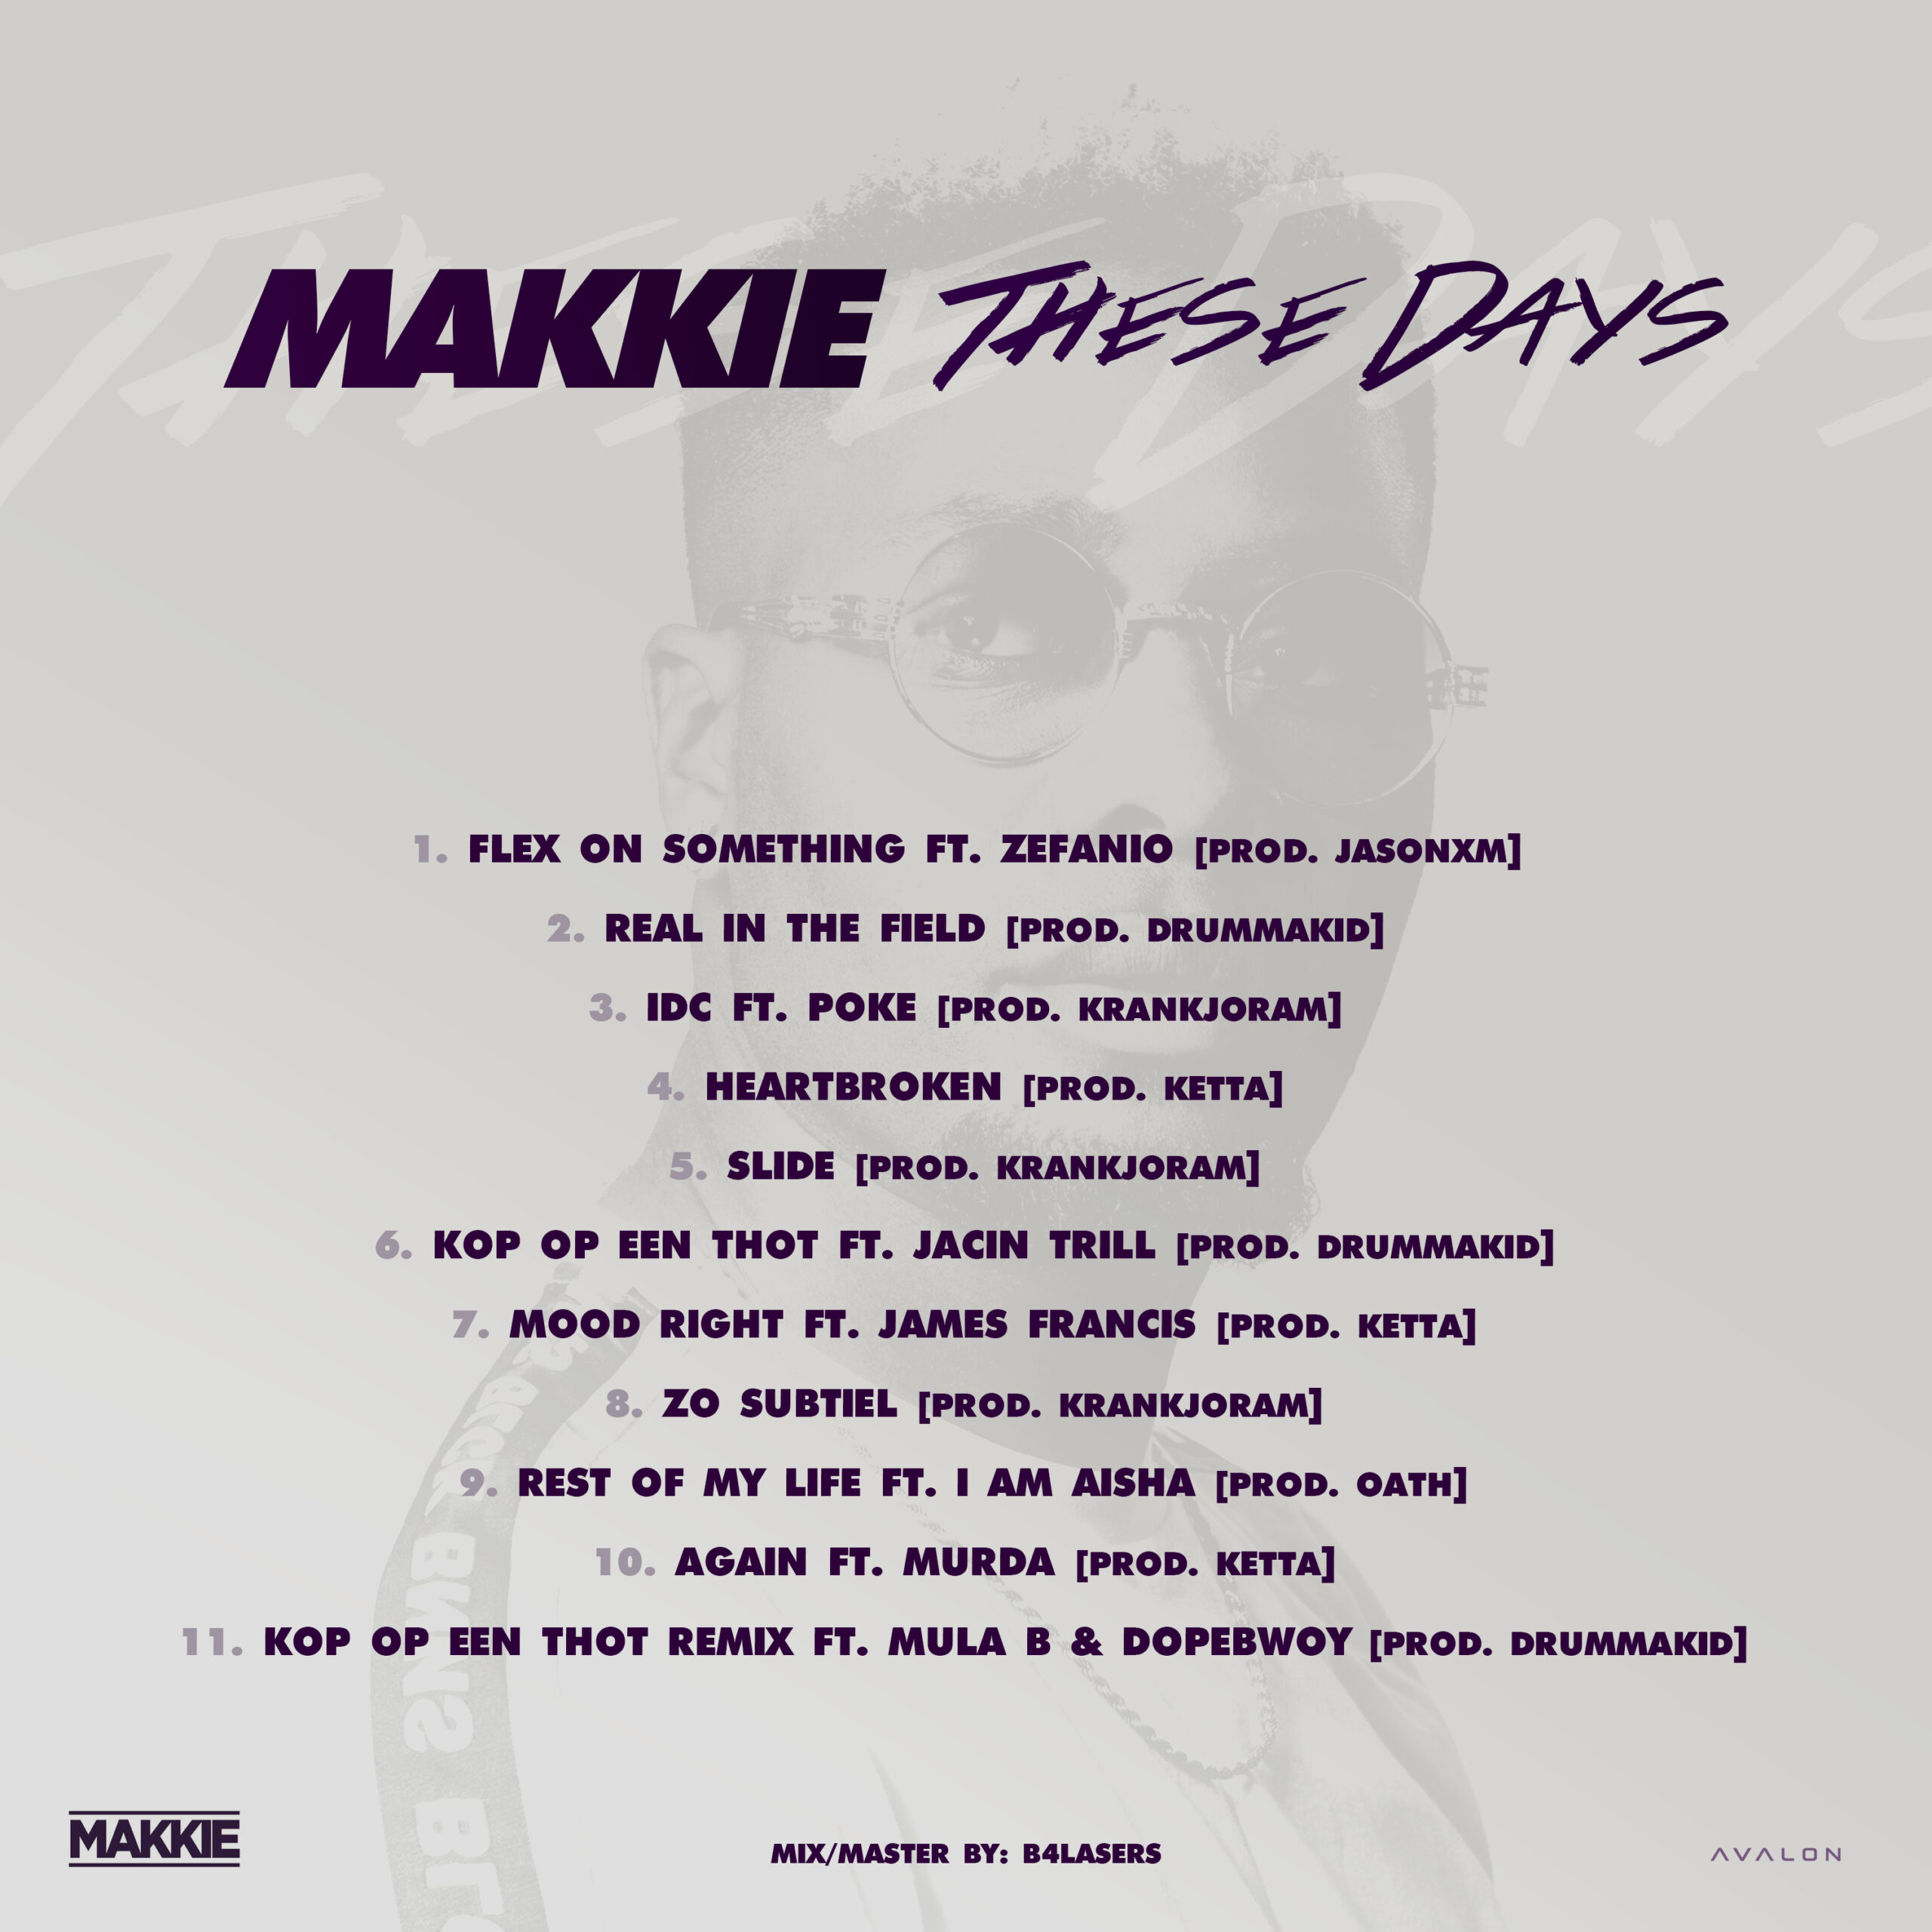 Makkie – These Days EP Tracklist